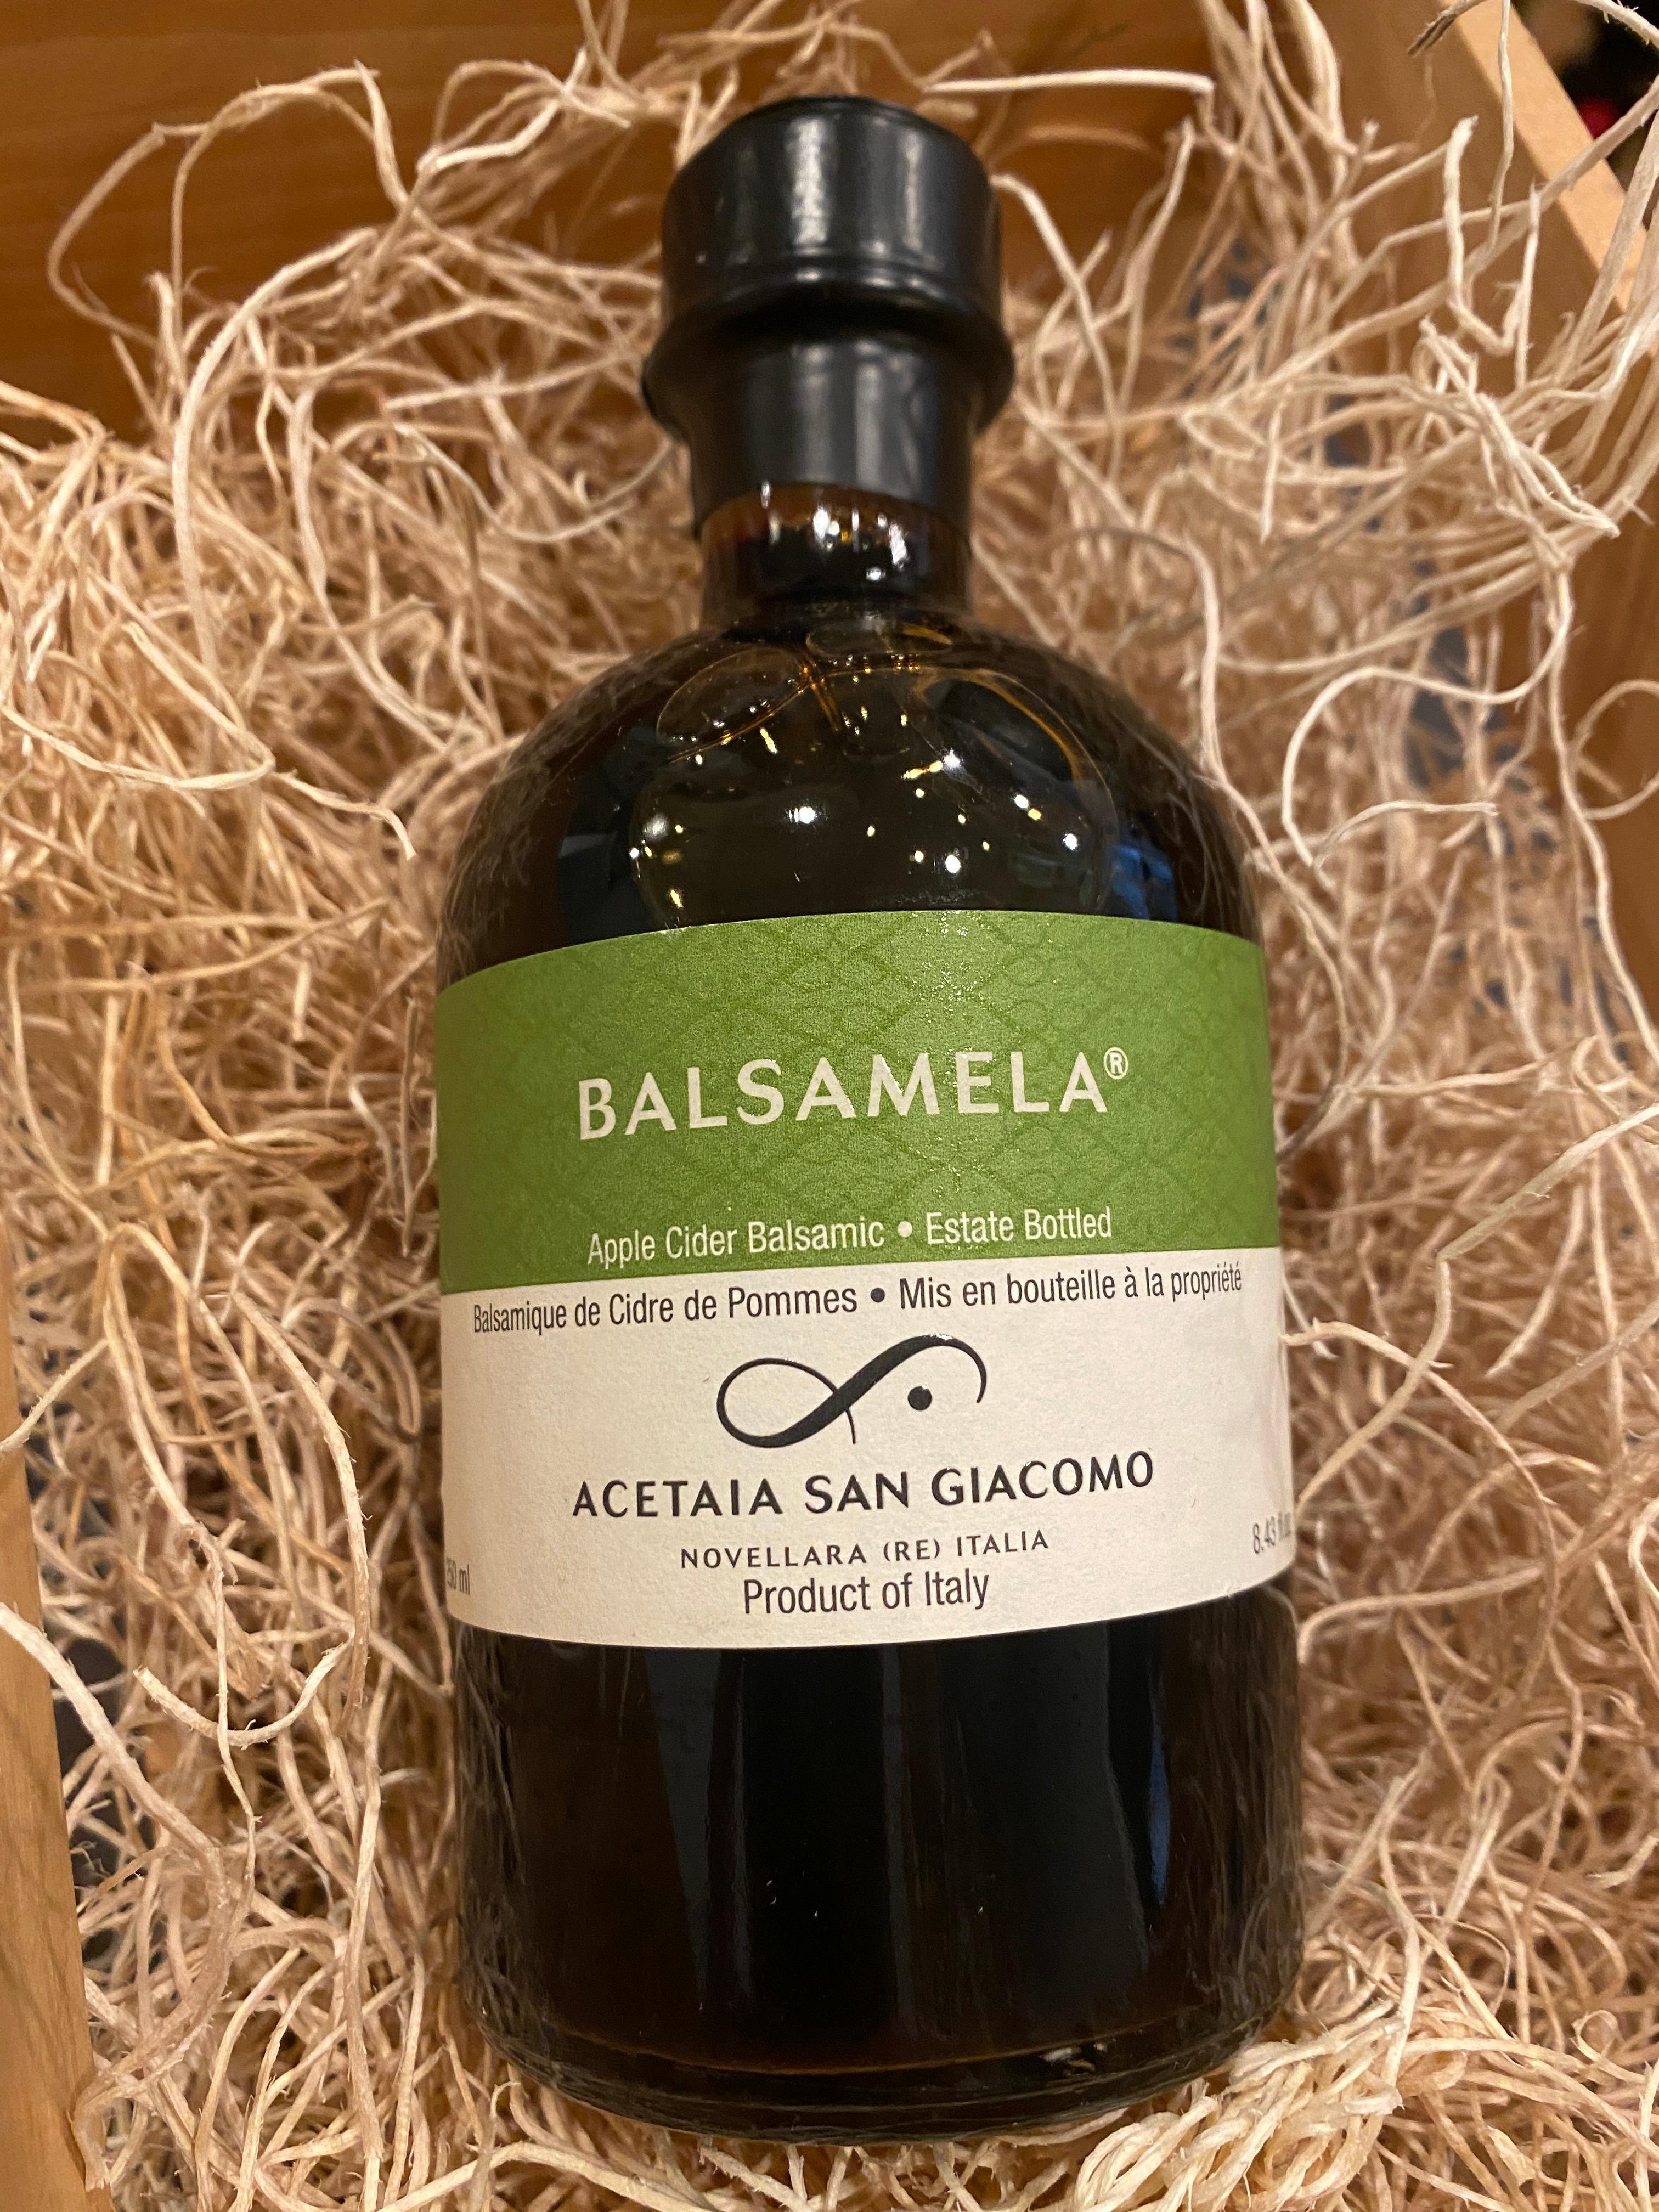 Balsamic "Balsamela" Vinegar (250ml)